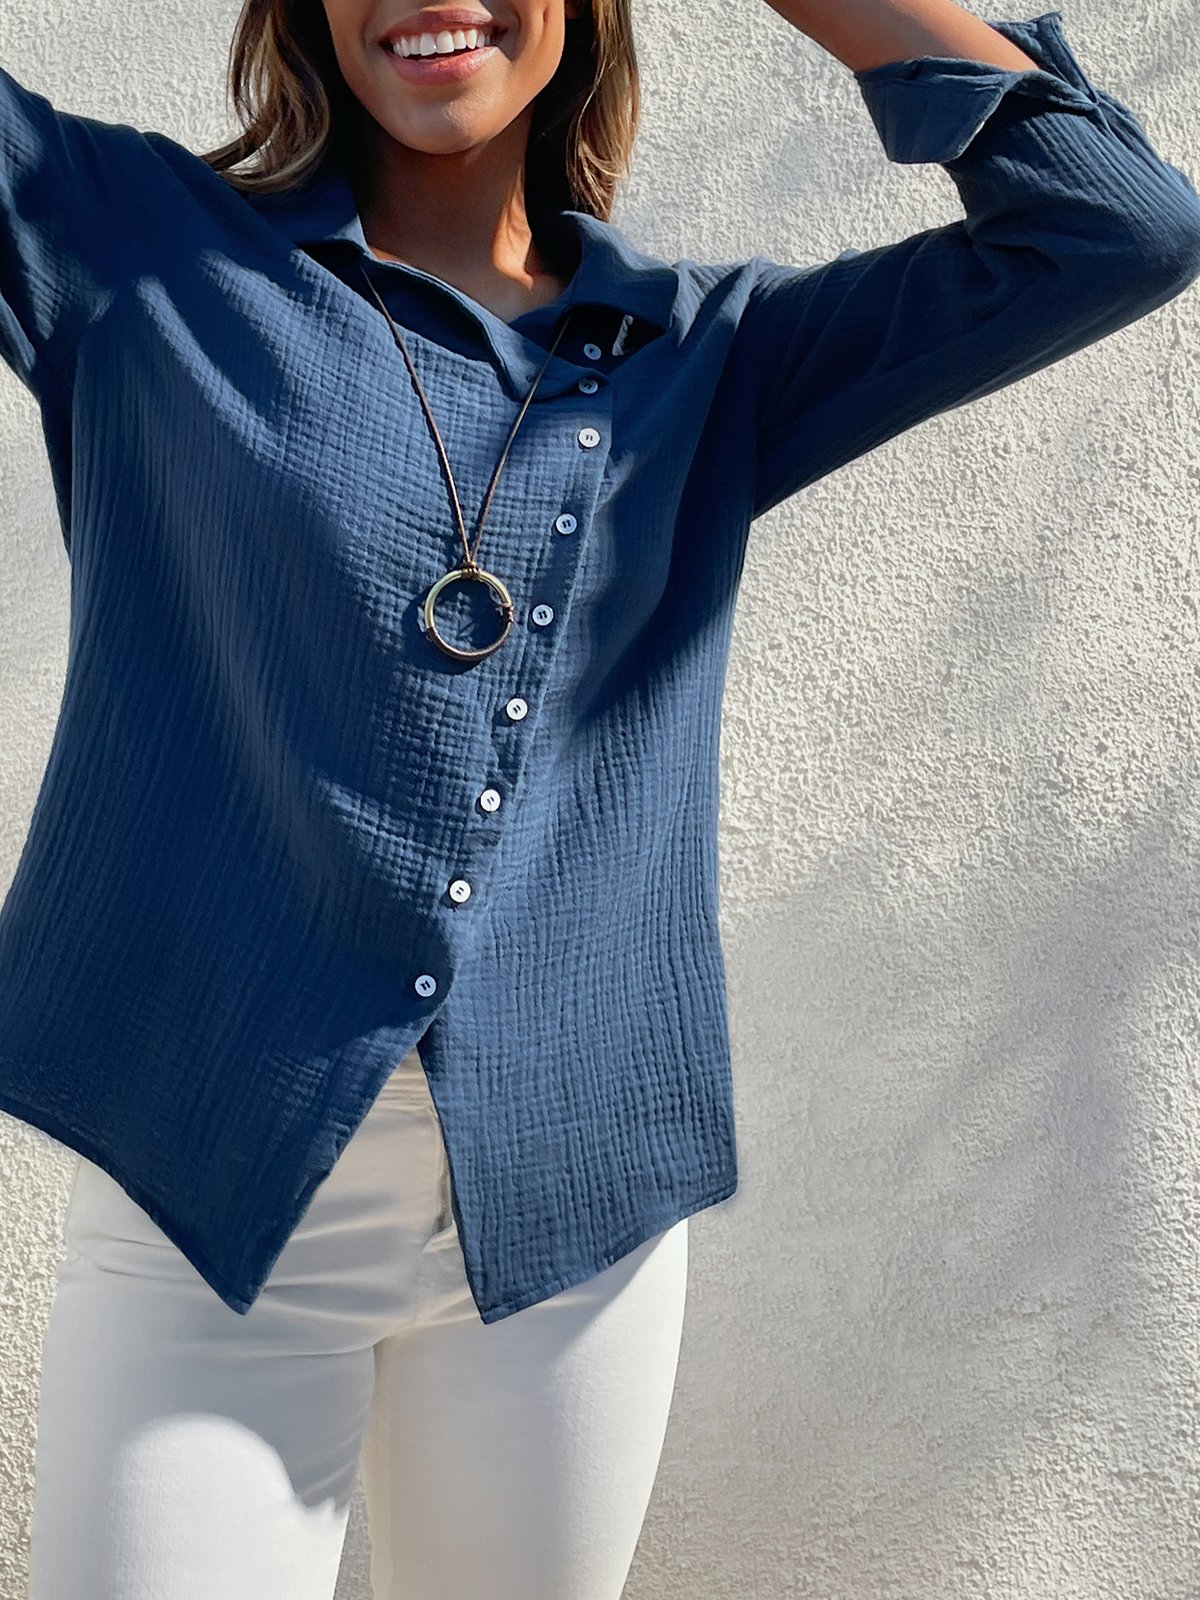 Women's Shirt Blouse Linen Cotton Plain Button Long Sleeve Daily Weekend Casual Shirt Collar Regular